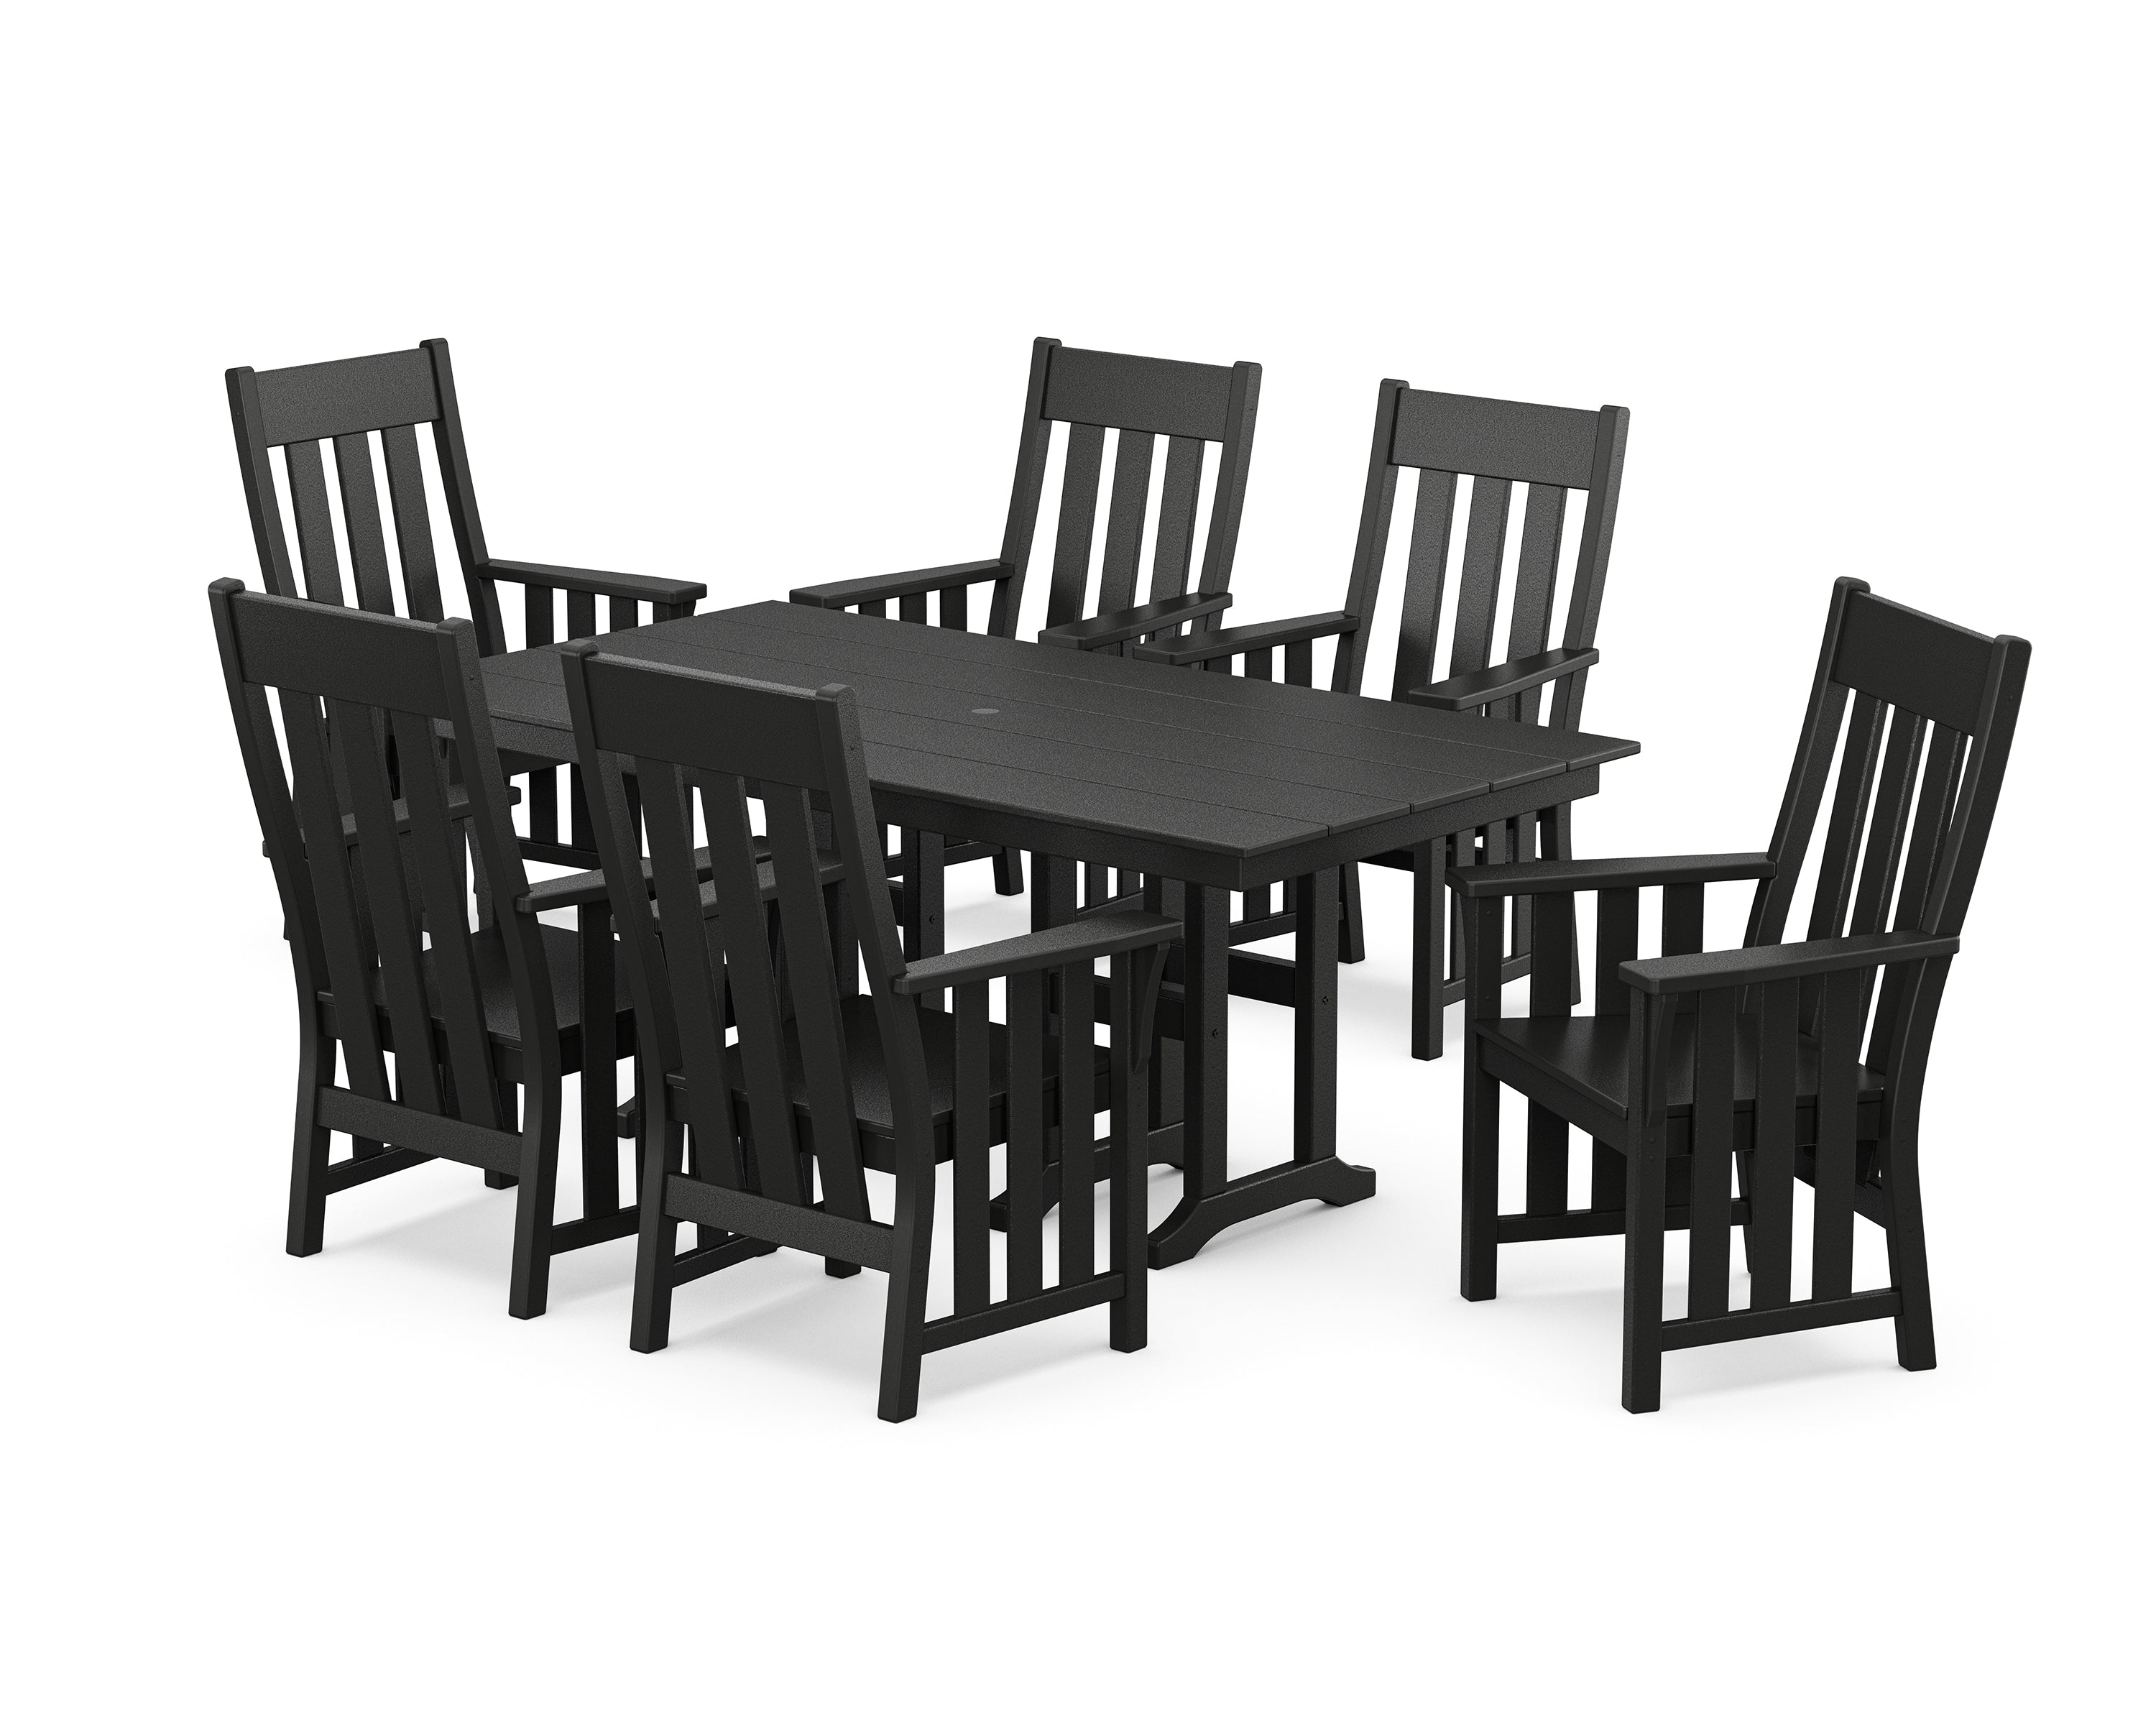 Martha Stewart by POLYWOOD® Acadia Arm Chair 7-Piece Farmhouse Dining Set in Black